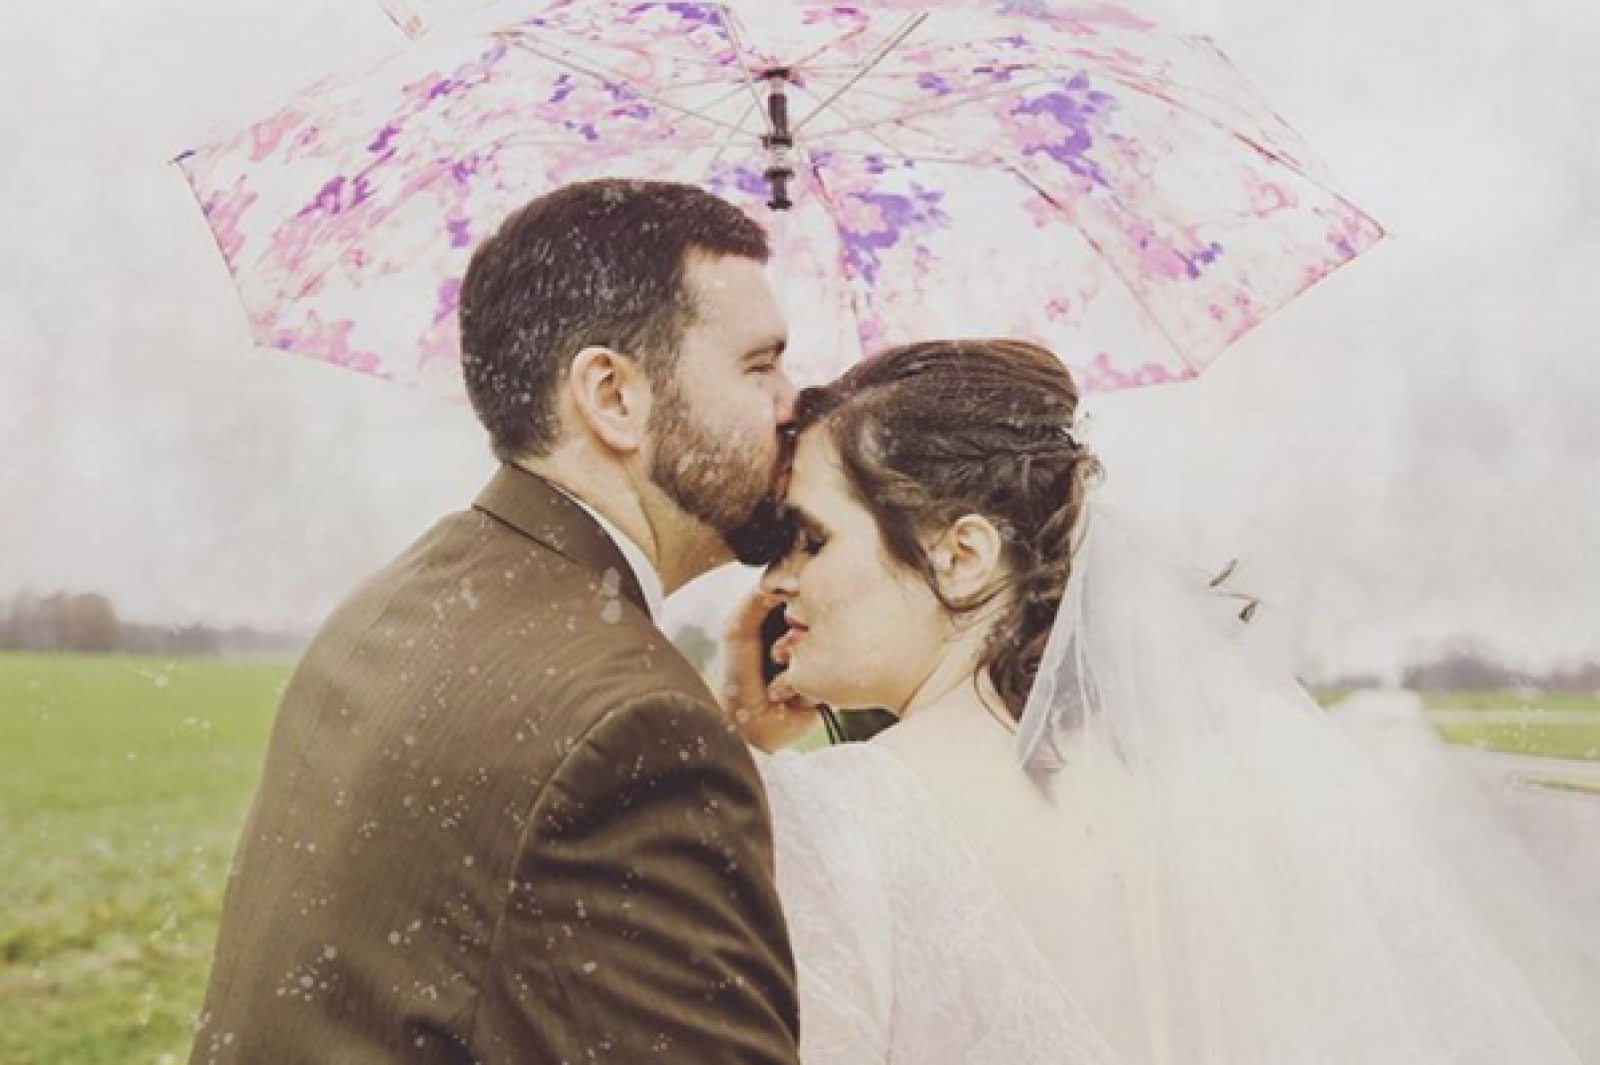 kissing under umbrella